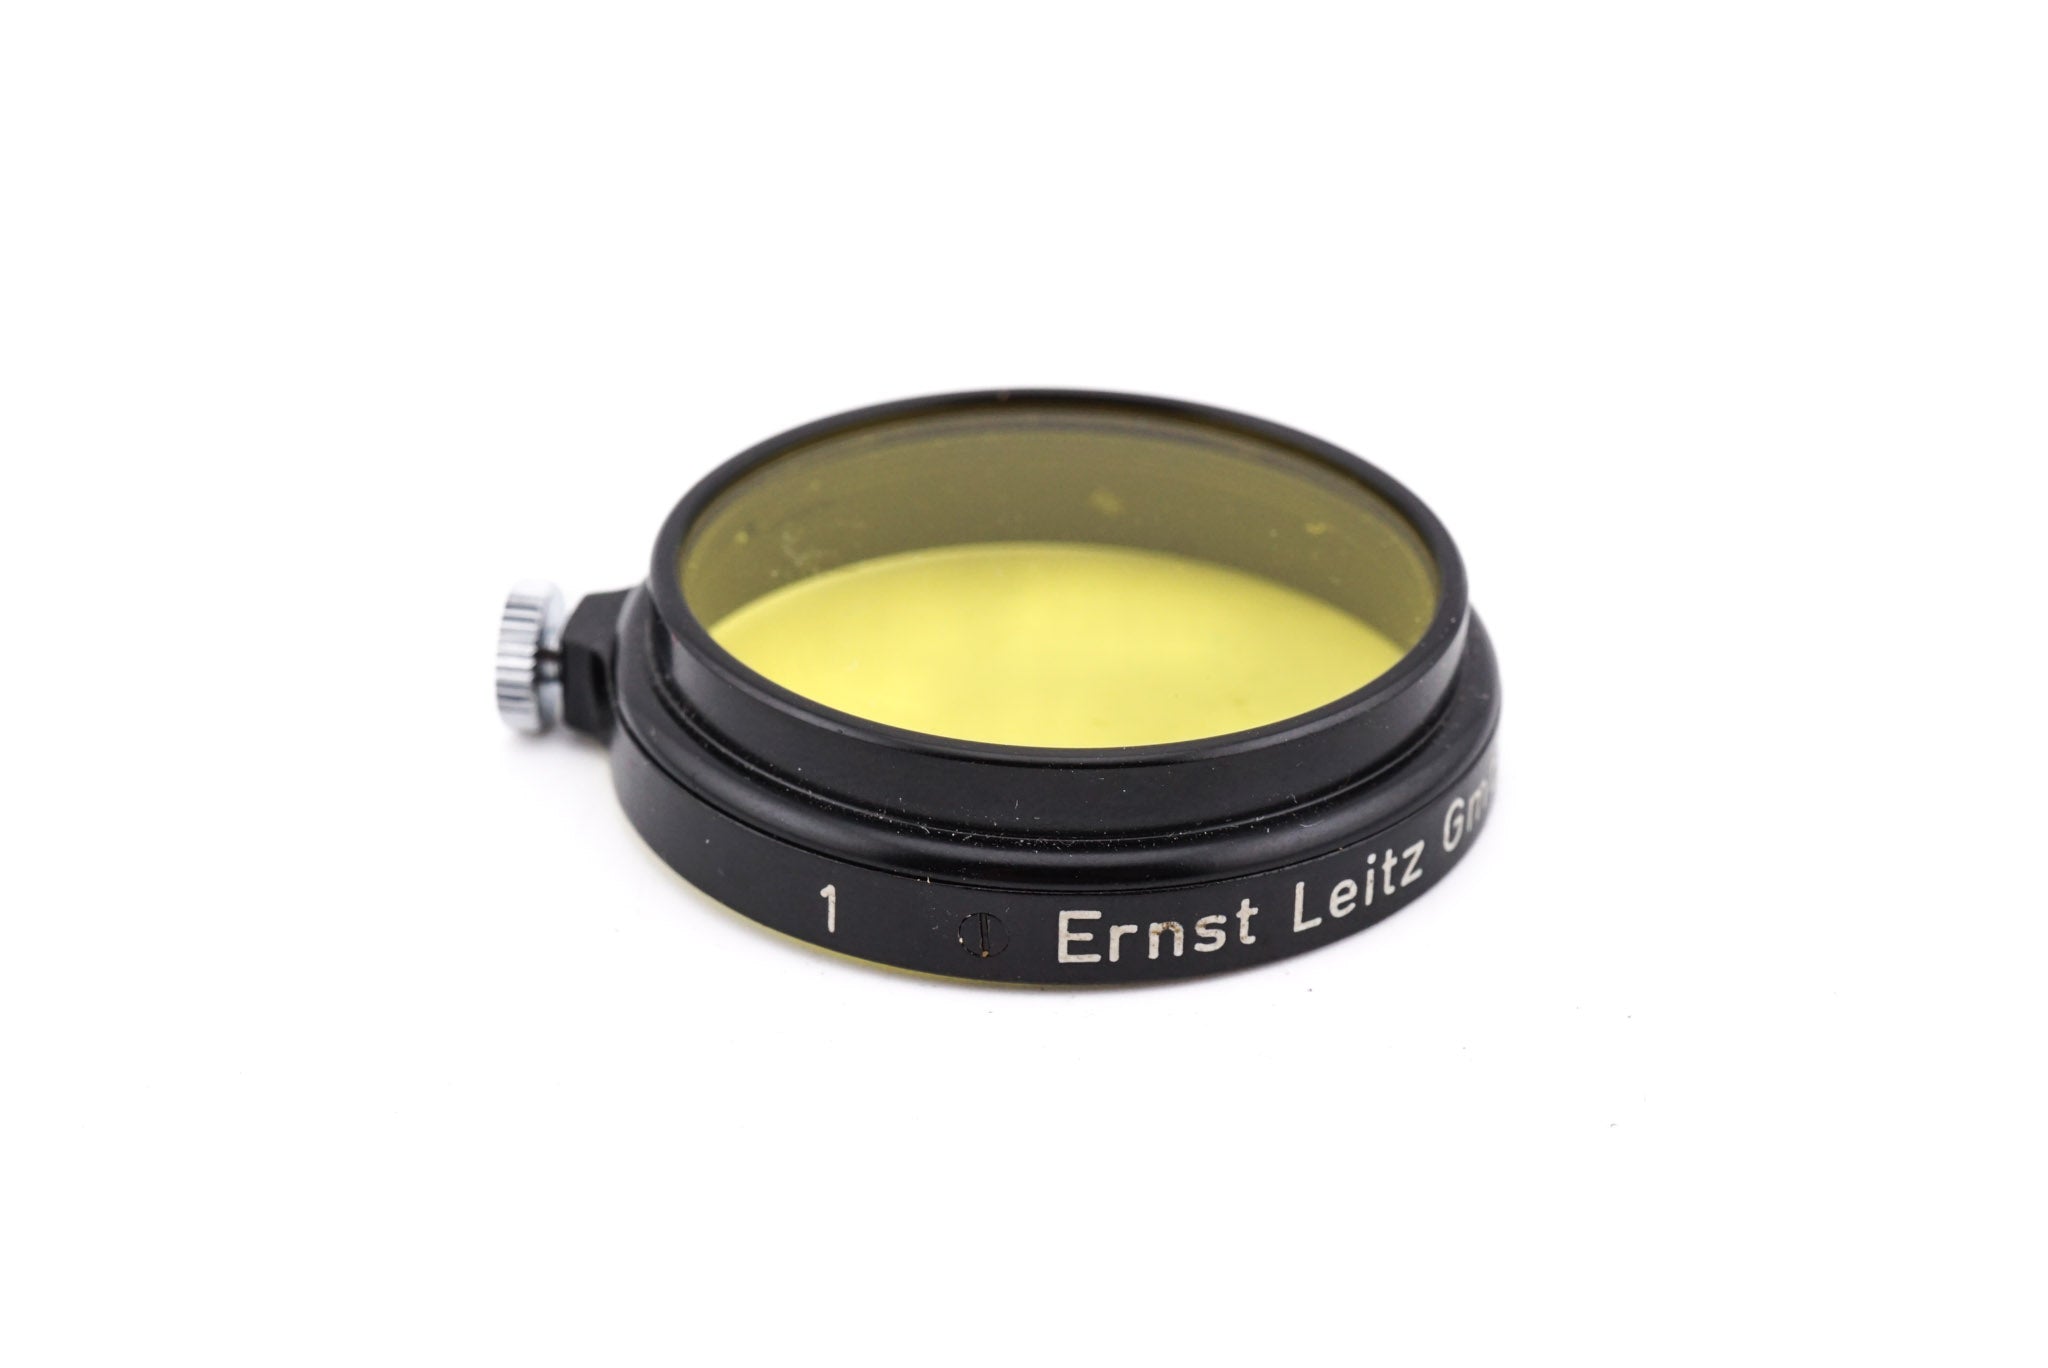 Verlichten Mus dividend Leica 36mm Yellow Filter No.1 - Accessory